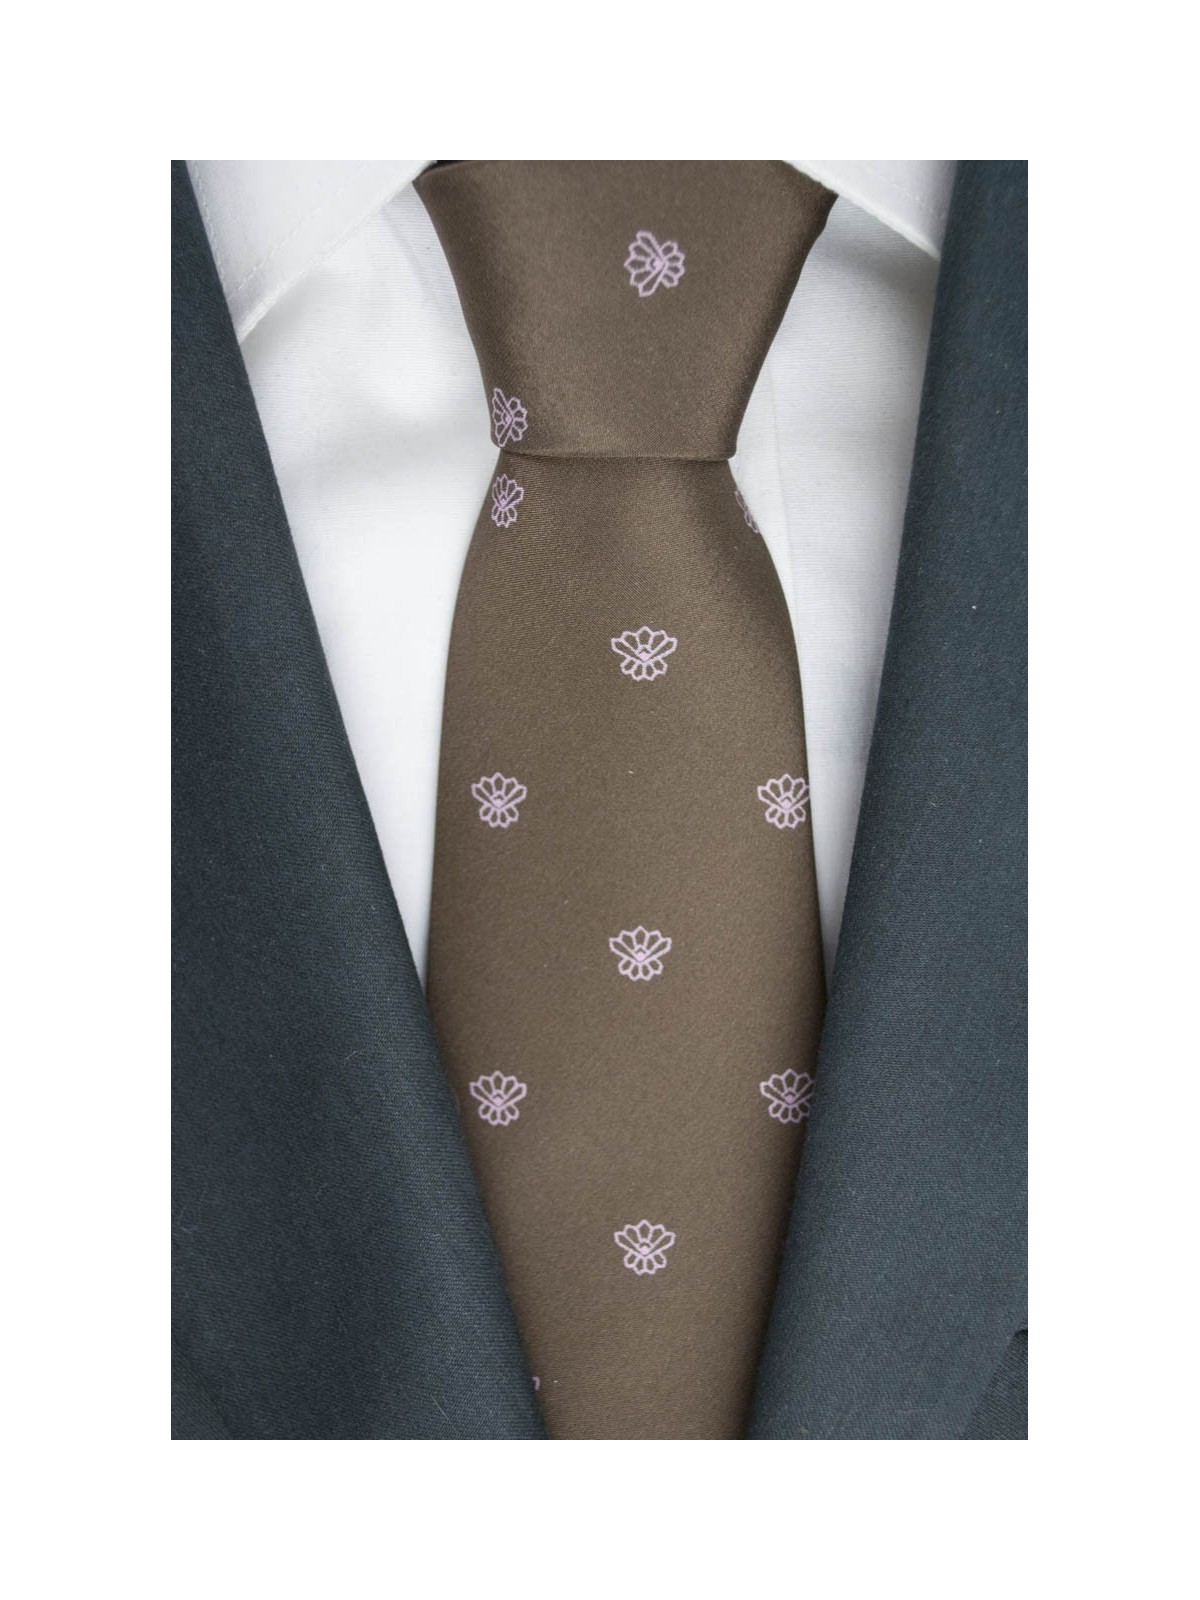 Brown corbata con Diseños Pequeños de color Rosa - 100% Pura Seda - Made in Italy